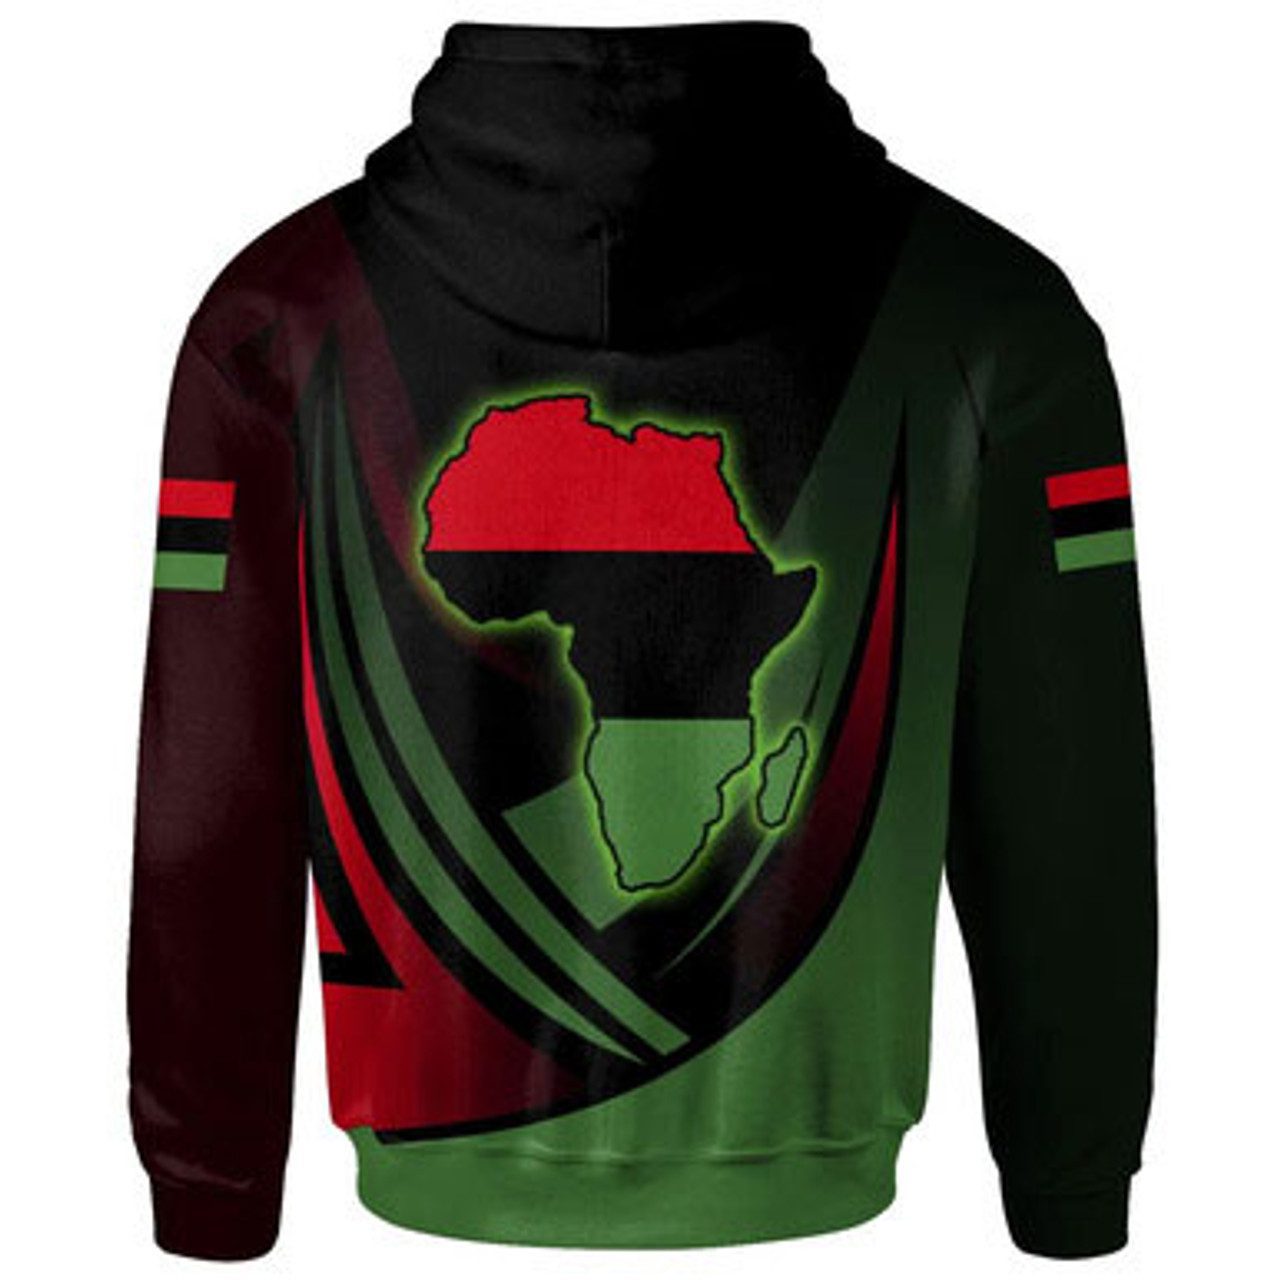 African Hoodie – Africa Sports Style Hoodie